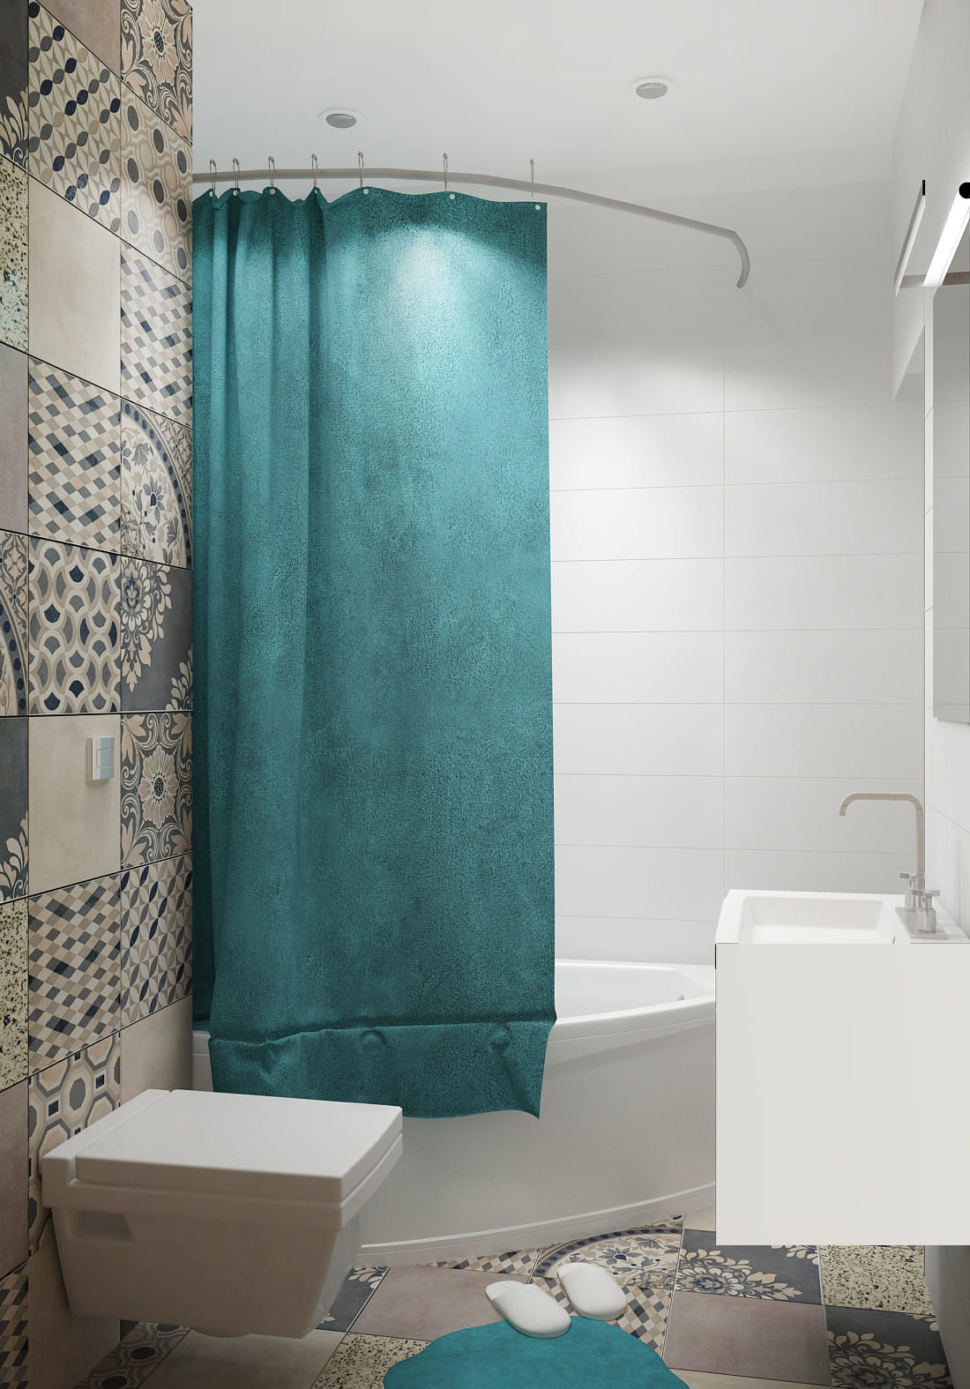 Визуализация ванной комнаты 4 кв.м в зеленых тонах, унитаз, раковина, ванная